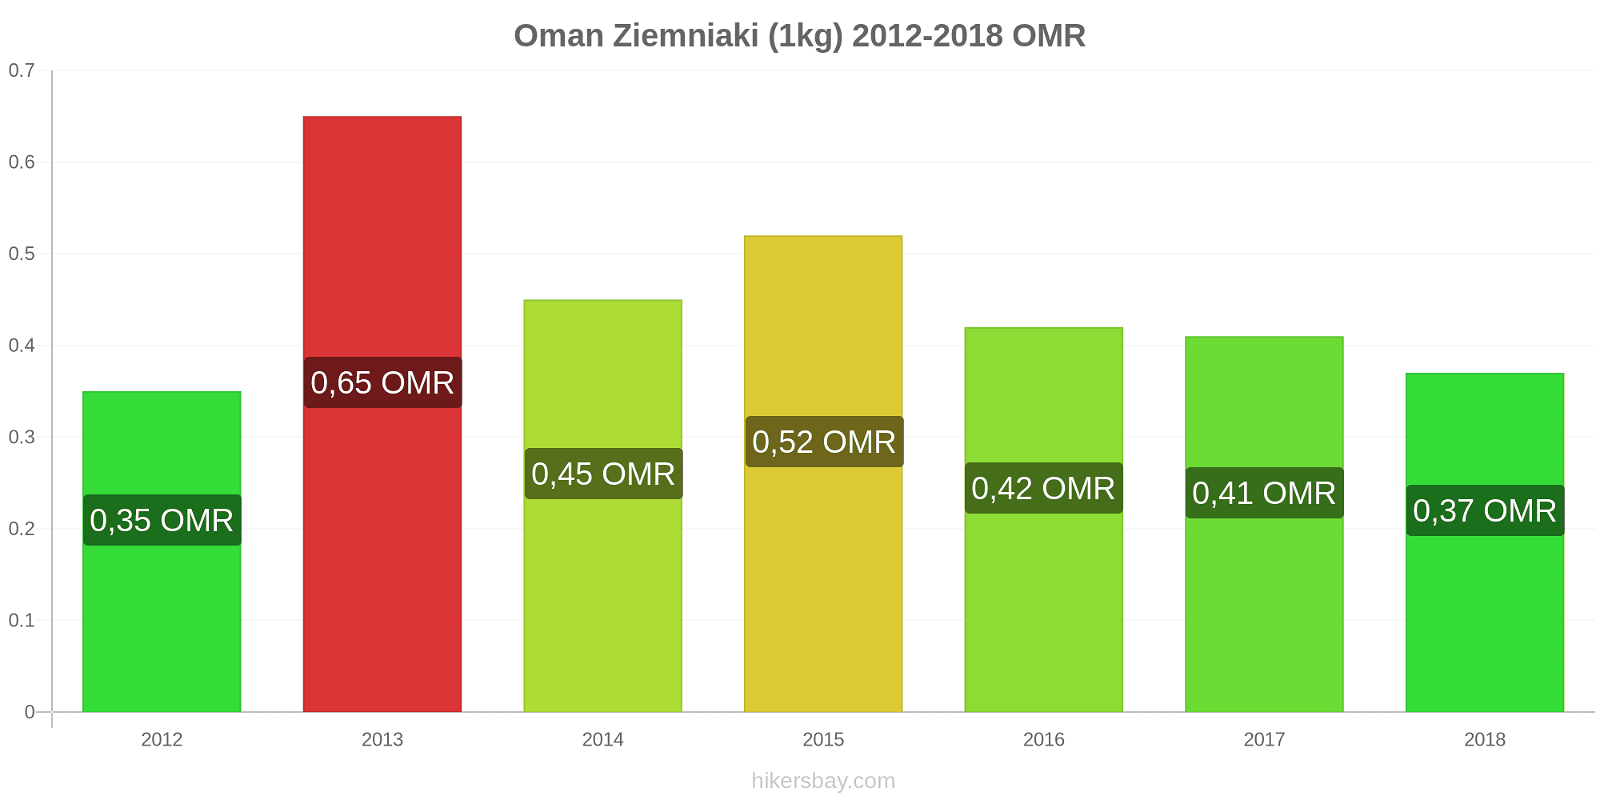 Oman zmiany cen Ziemniaki (1kg) hikersbay.com